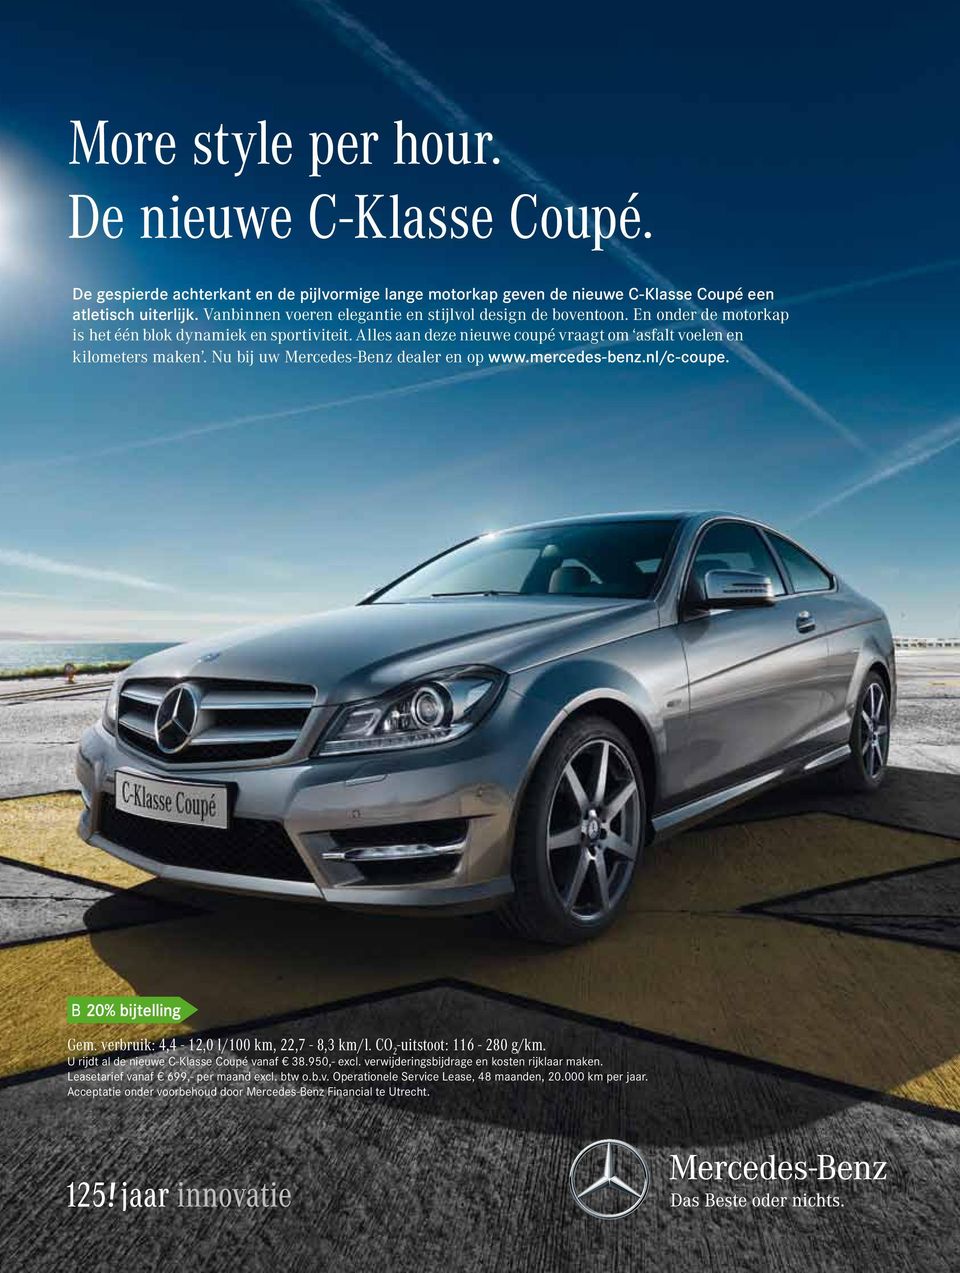 Nu bij uw Mercedes-Benz dealer en op www.mercedes-benz.nl/c-coupe. Gem. verbruik: 4,4-12,0 l/100 km, 22,7-8,3 km/l. CO 2 -uitstoot: 116-280 g/km. U rijdt al de nieuwe C-Klasse Coupé vanaf 38.